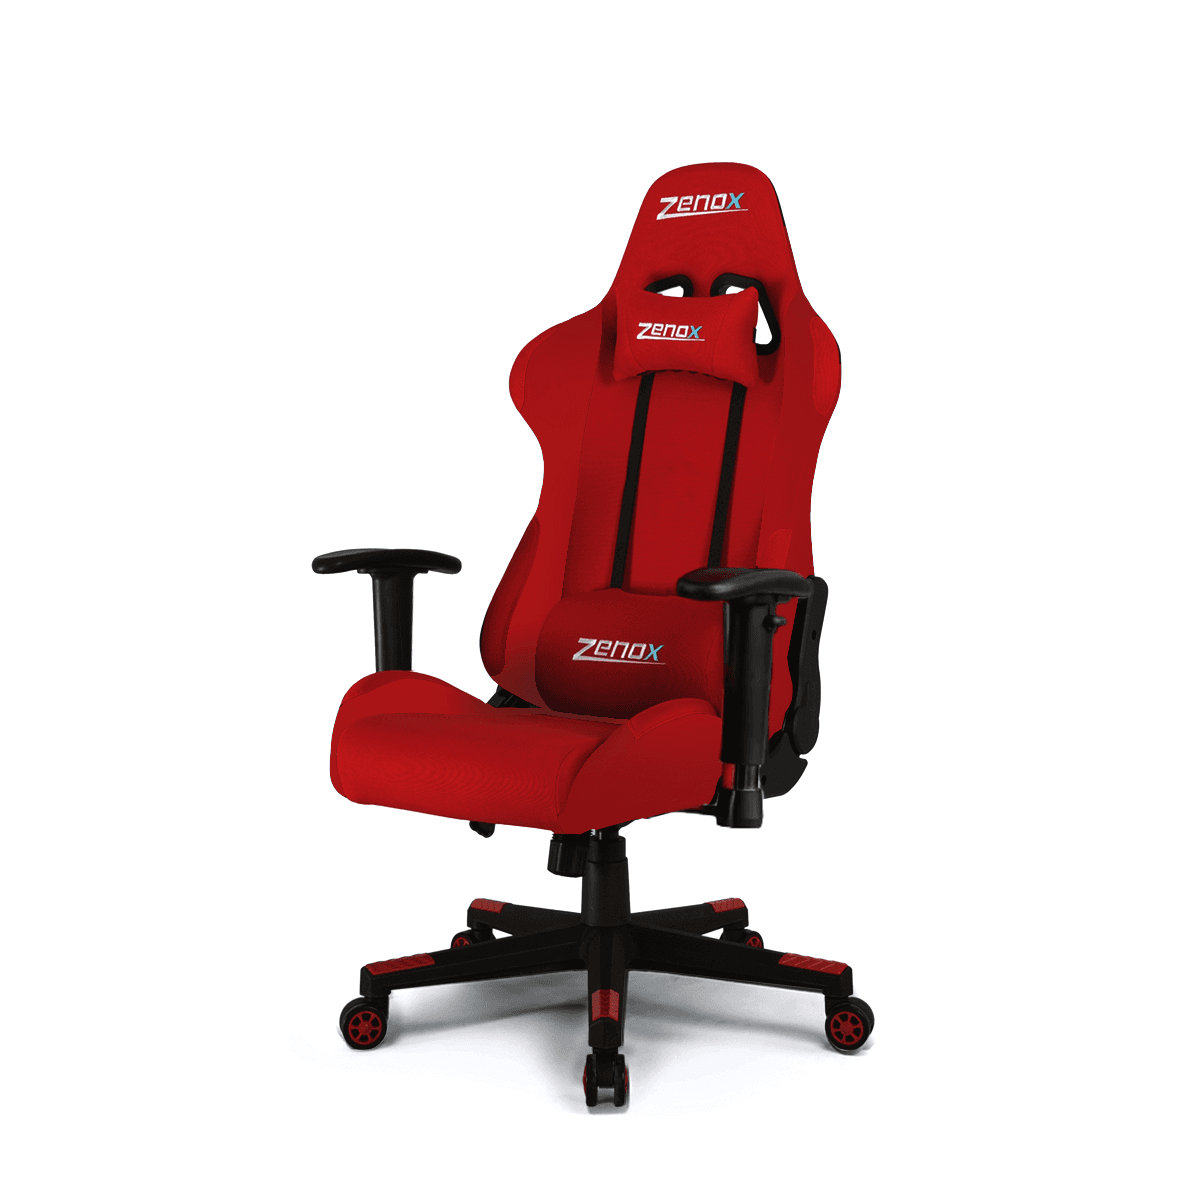 ZENOX Pluto Racing Chair (Red)